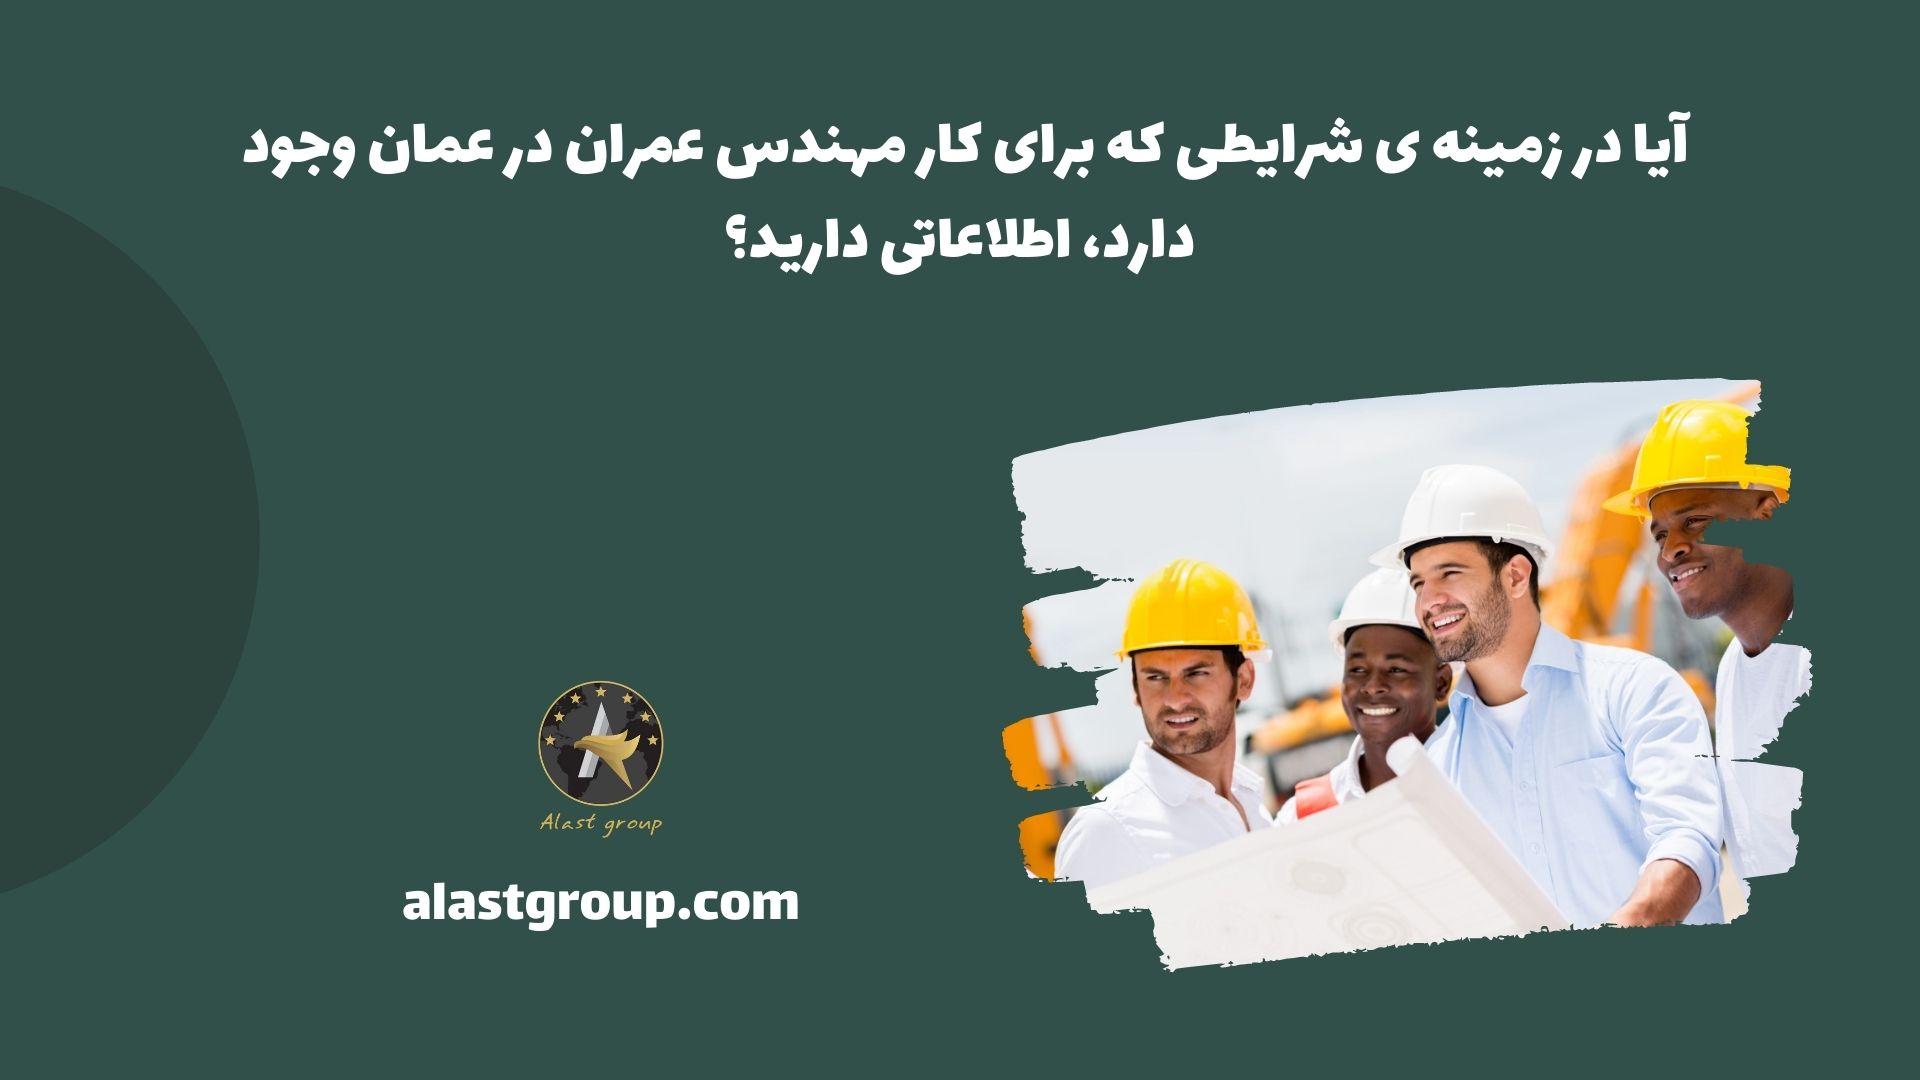 آیا در زمینه ی شرایطی که برای کار مهندس عمران در عمان وجود دارد، اطلاعاتی دارید؟